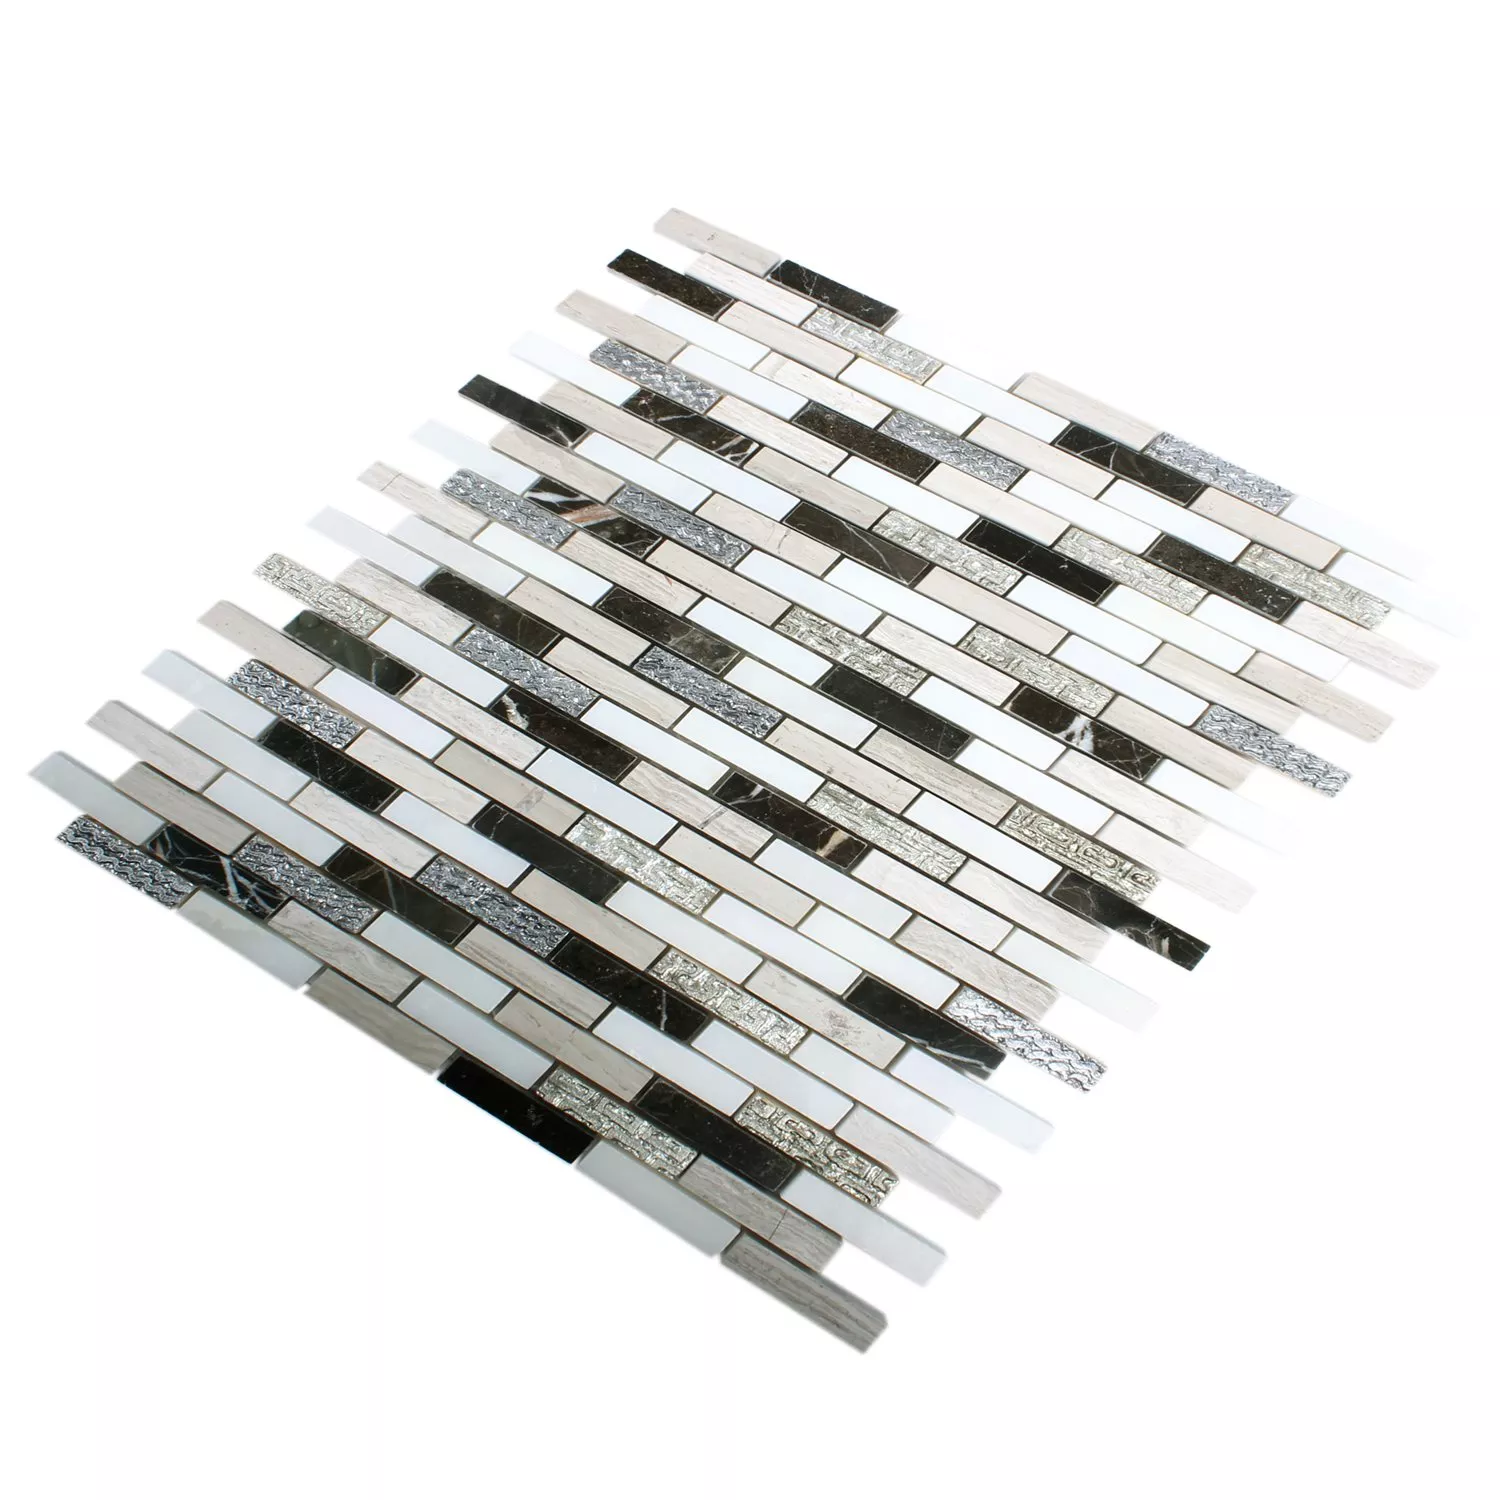 Mosaikfliesen Sicilia Silber Braun Weiss Grau Brick